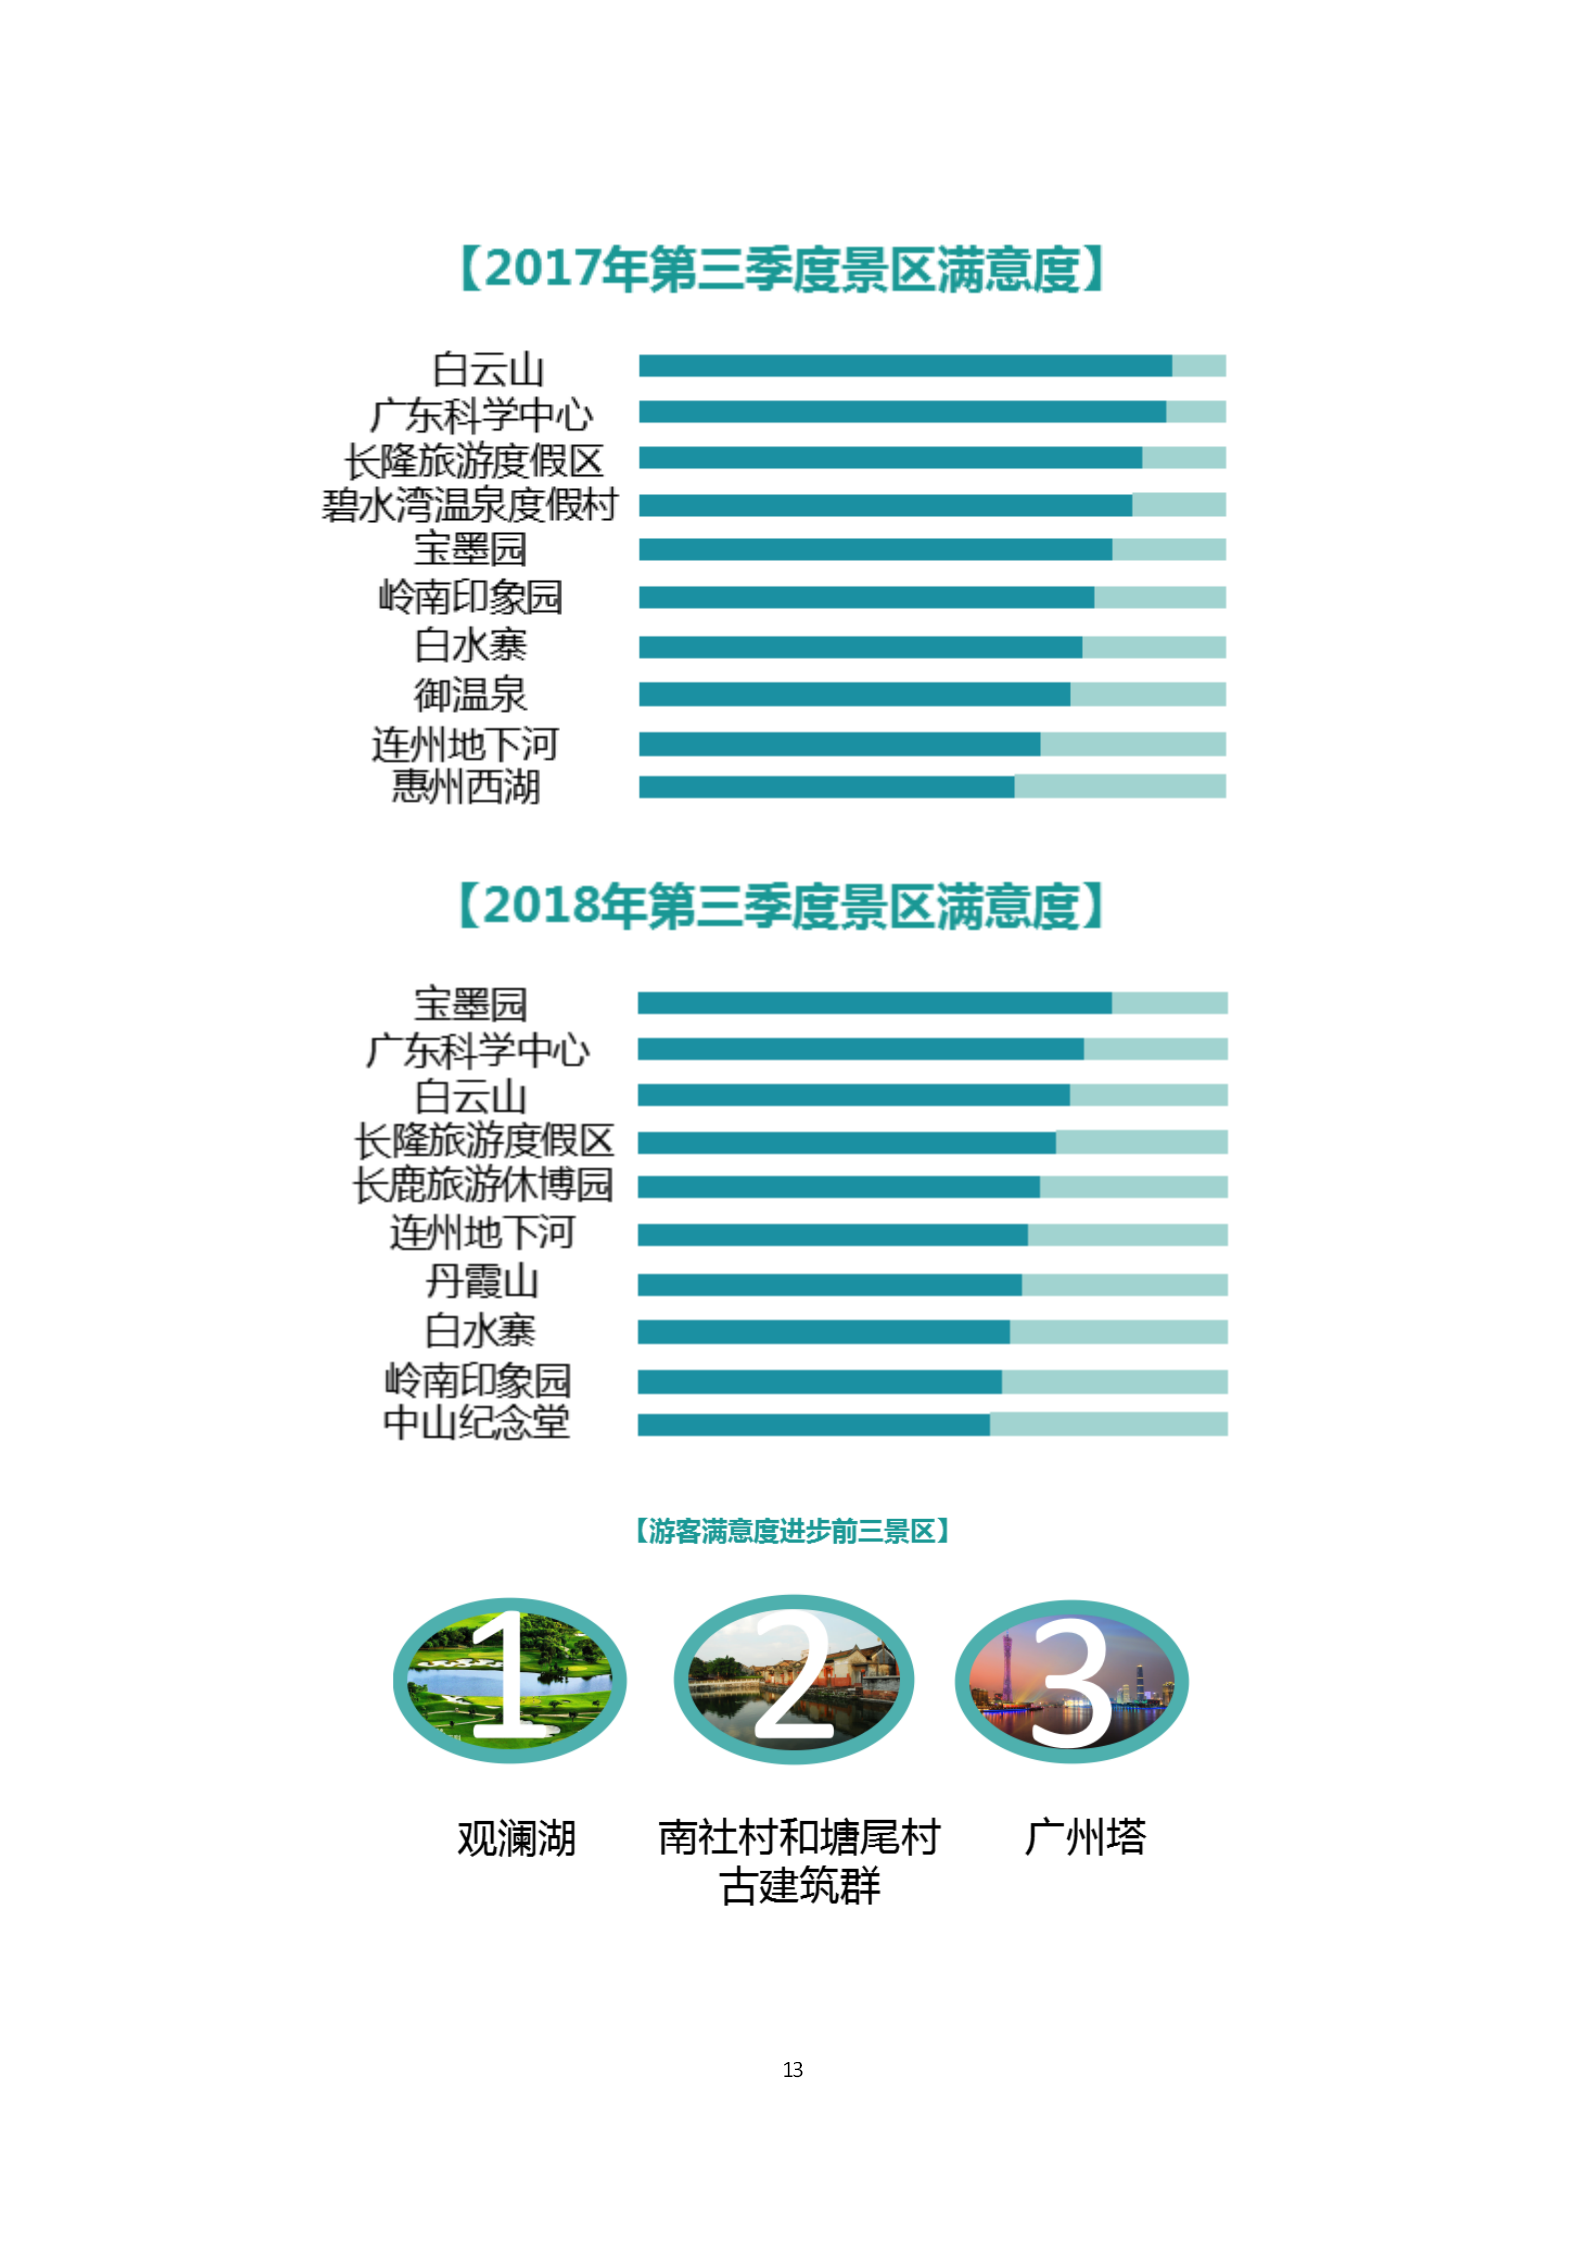 广东省旅游景区游客满意度大数据调查报告-2018年第三季度20181106_14